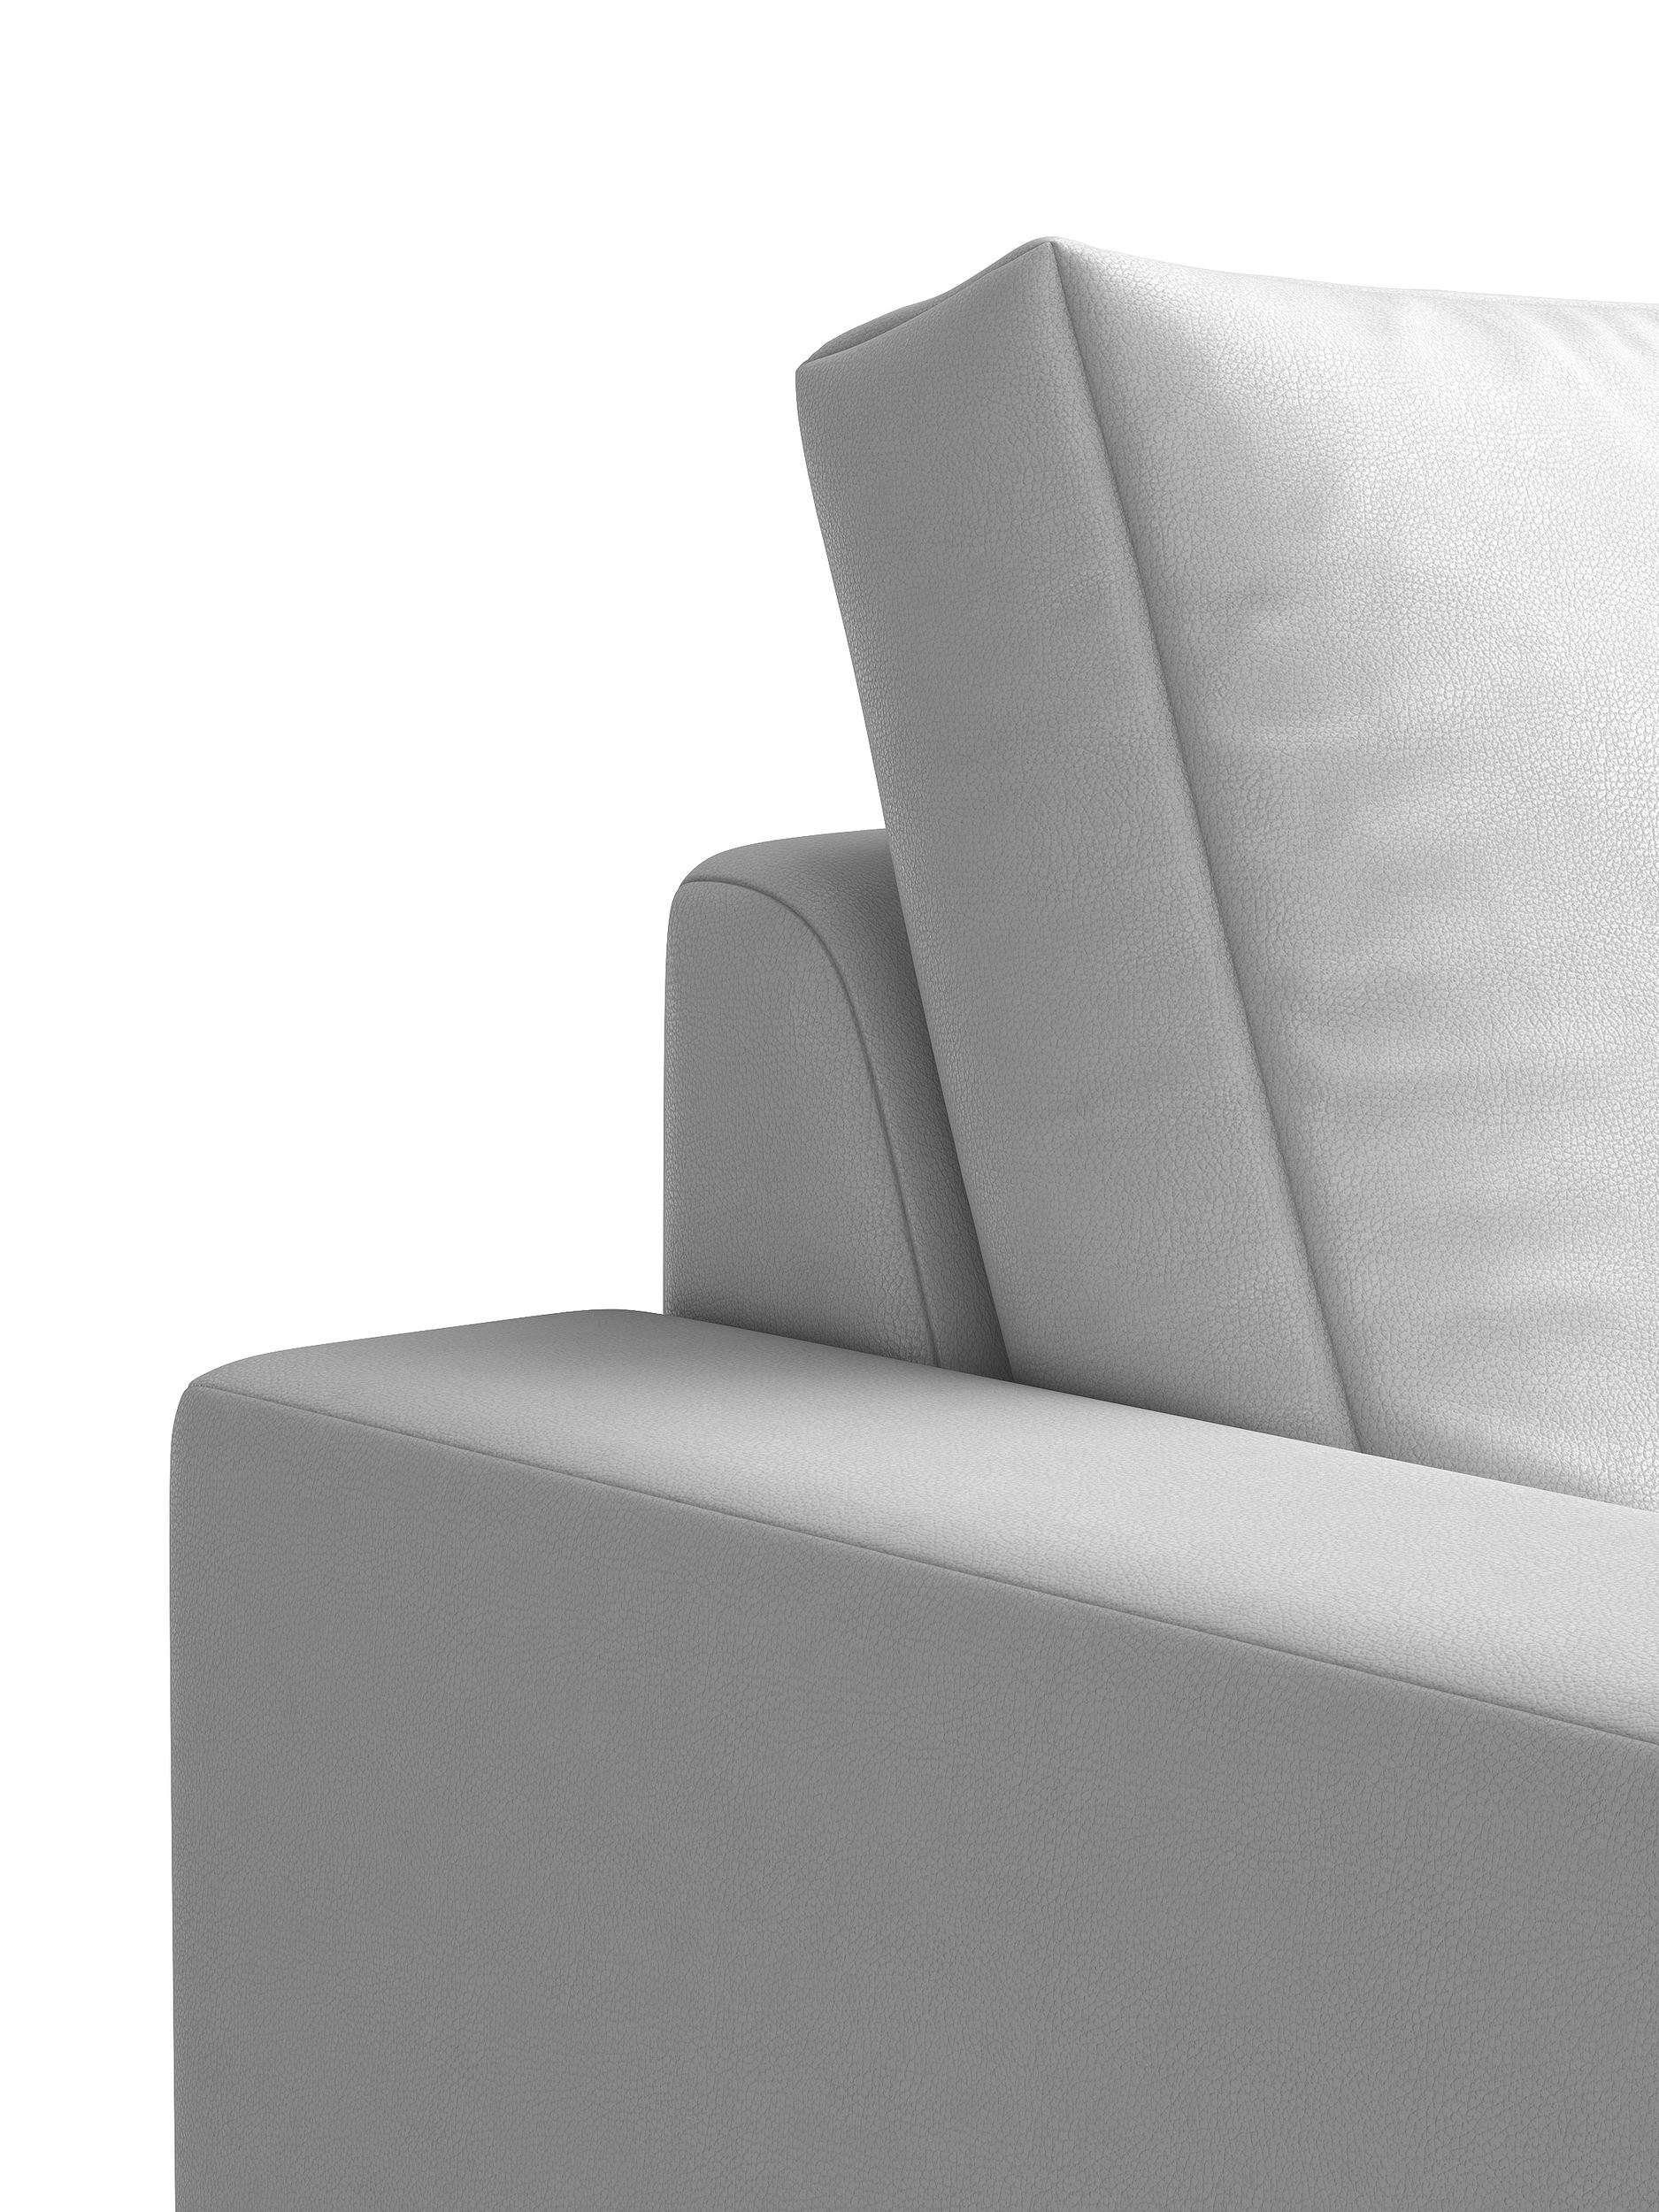 Stylefy 3-Sitzer Ari, 3-Sitzer, Sofa, made in im stellbar, Raum frei und mit Armlehnen Europa Modern Rückenlehne, Sitzkomfort, Design